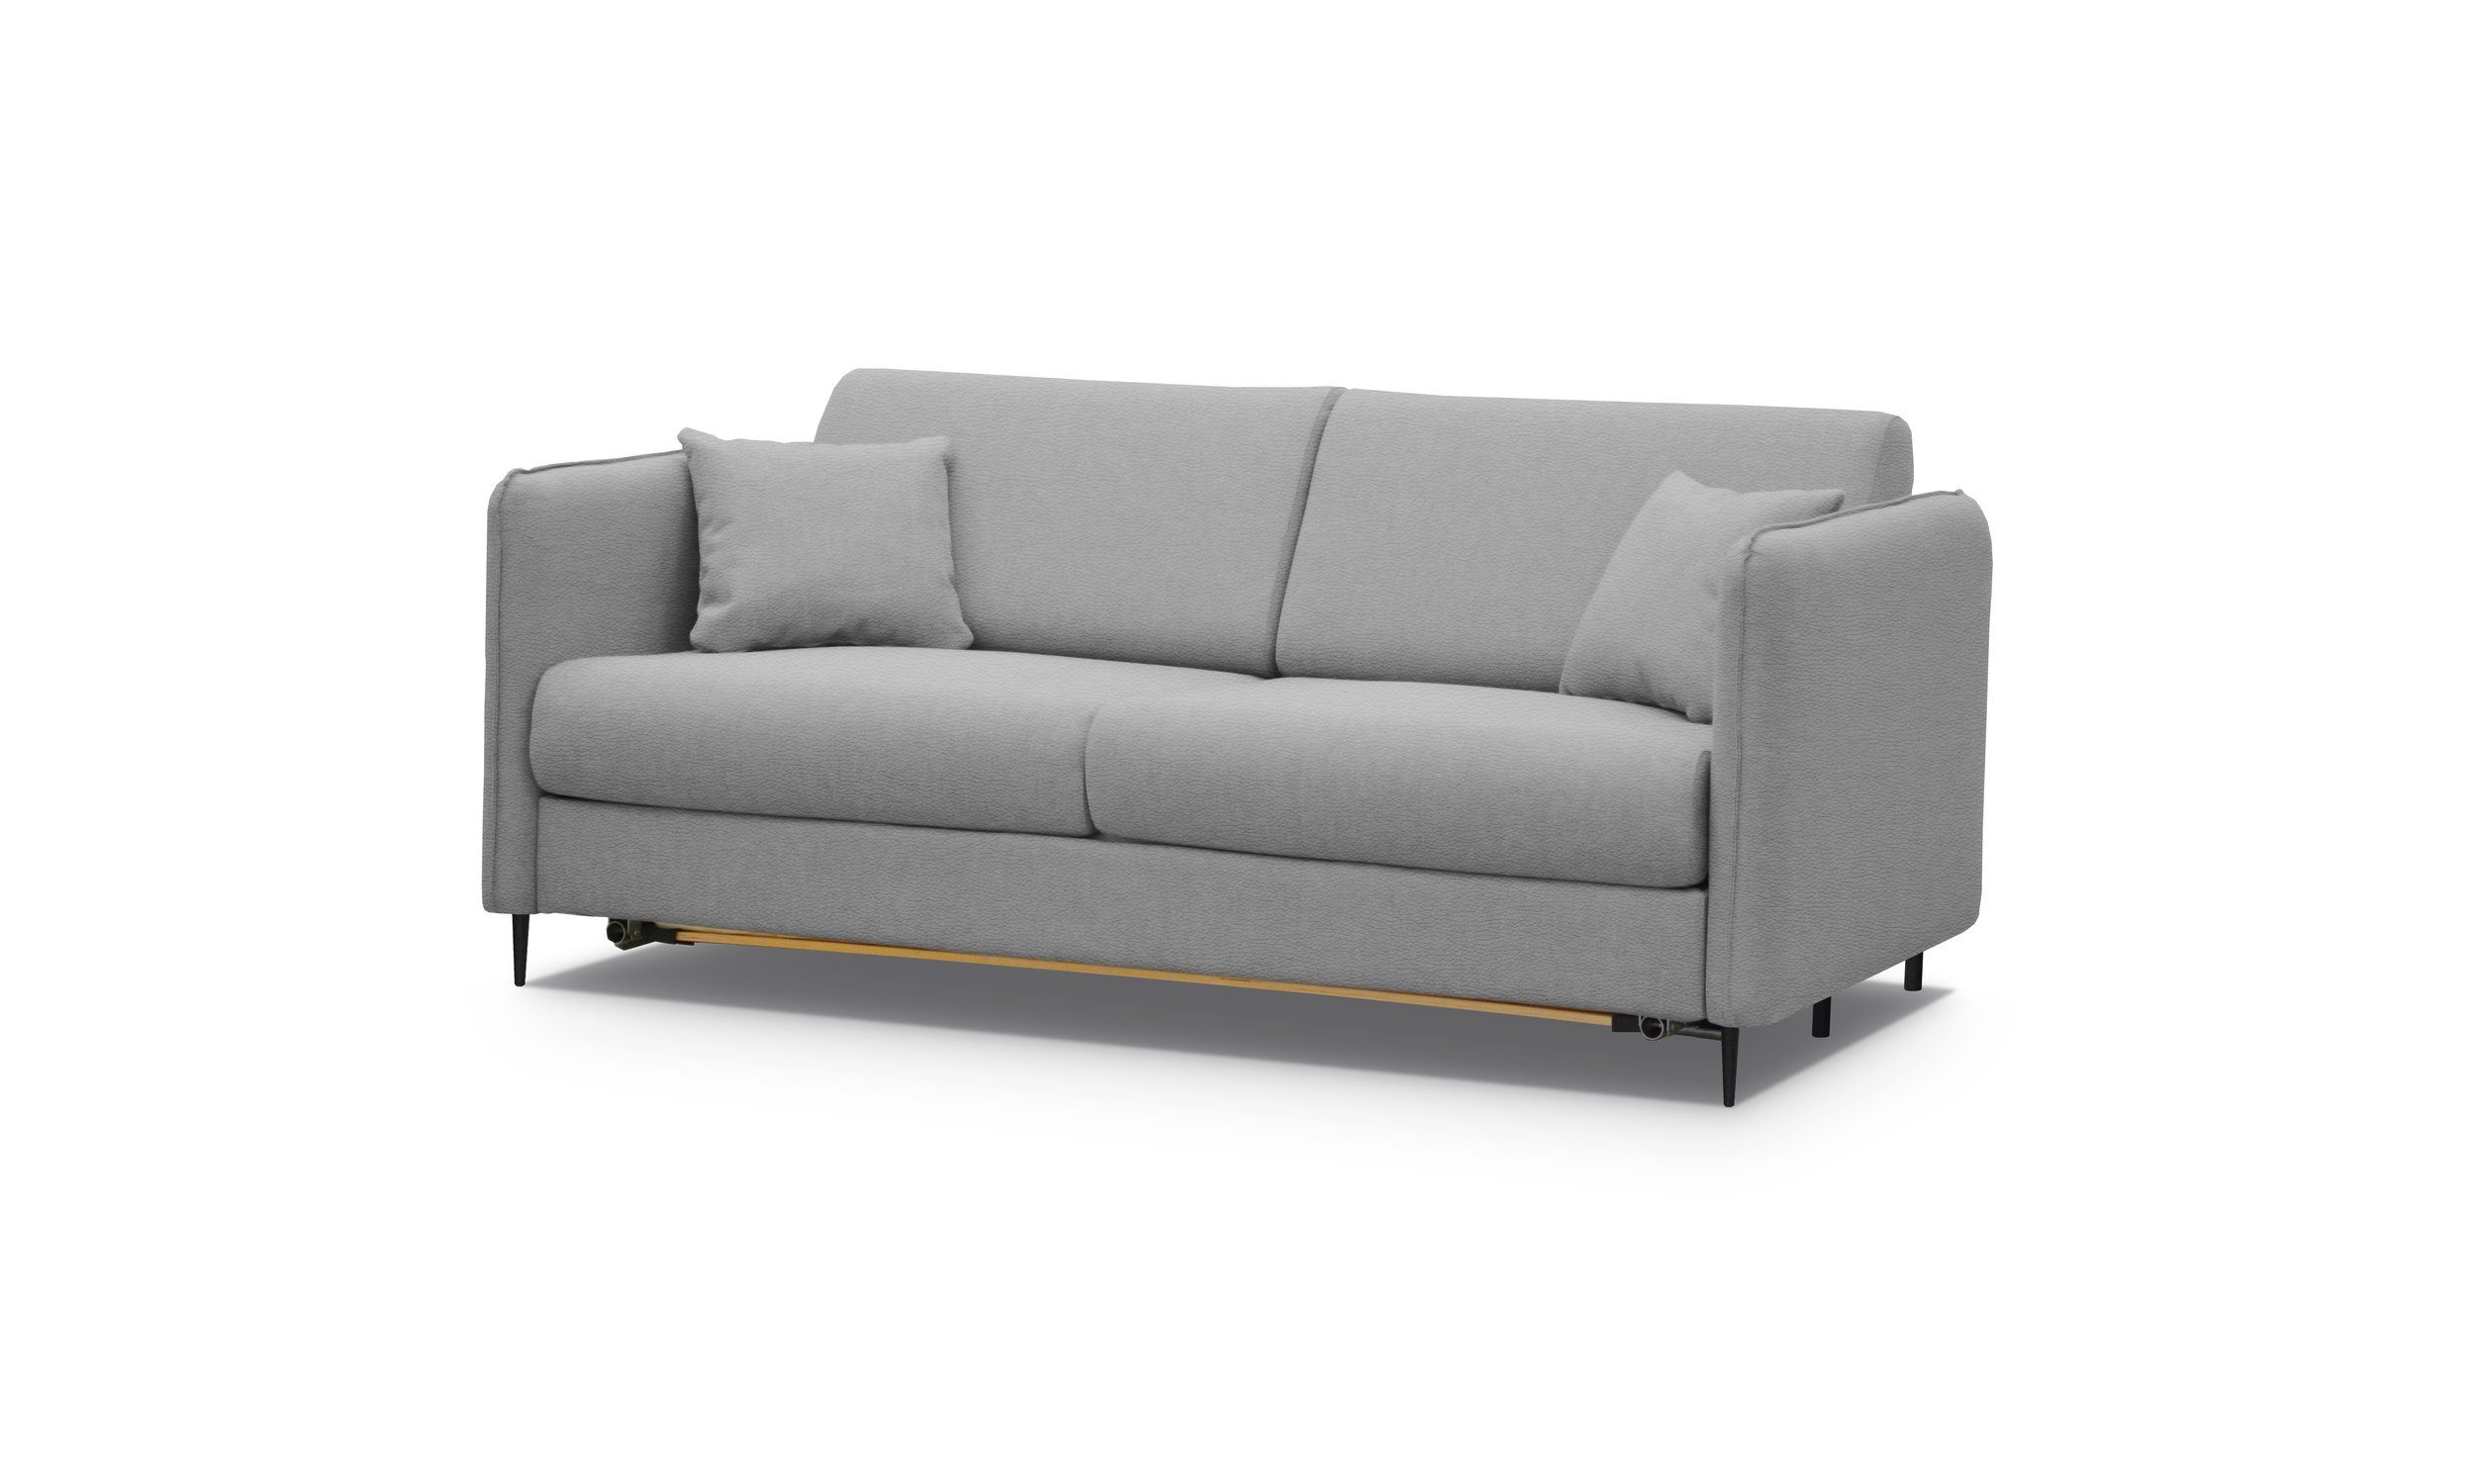 mit Design, stellbar, Raum 3-Sitzer Stylefy frei Modern im Metall 2-Sitzer, Bettfunktion, Arnold, Sofa,